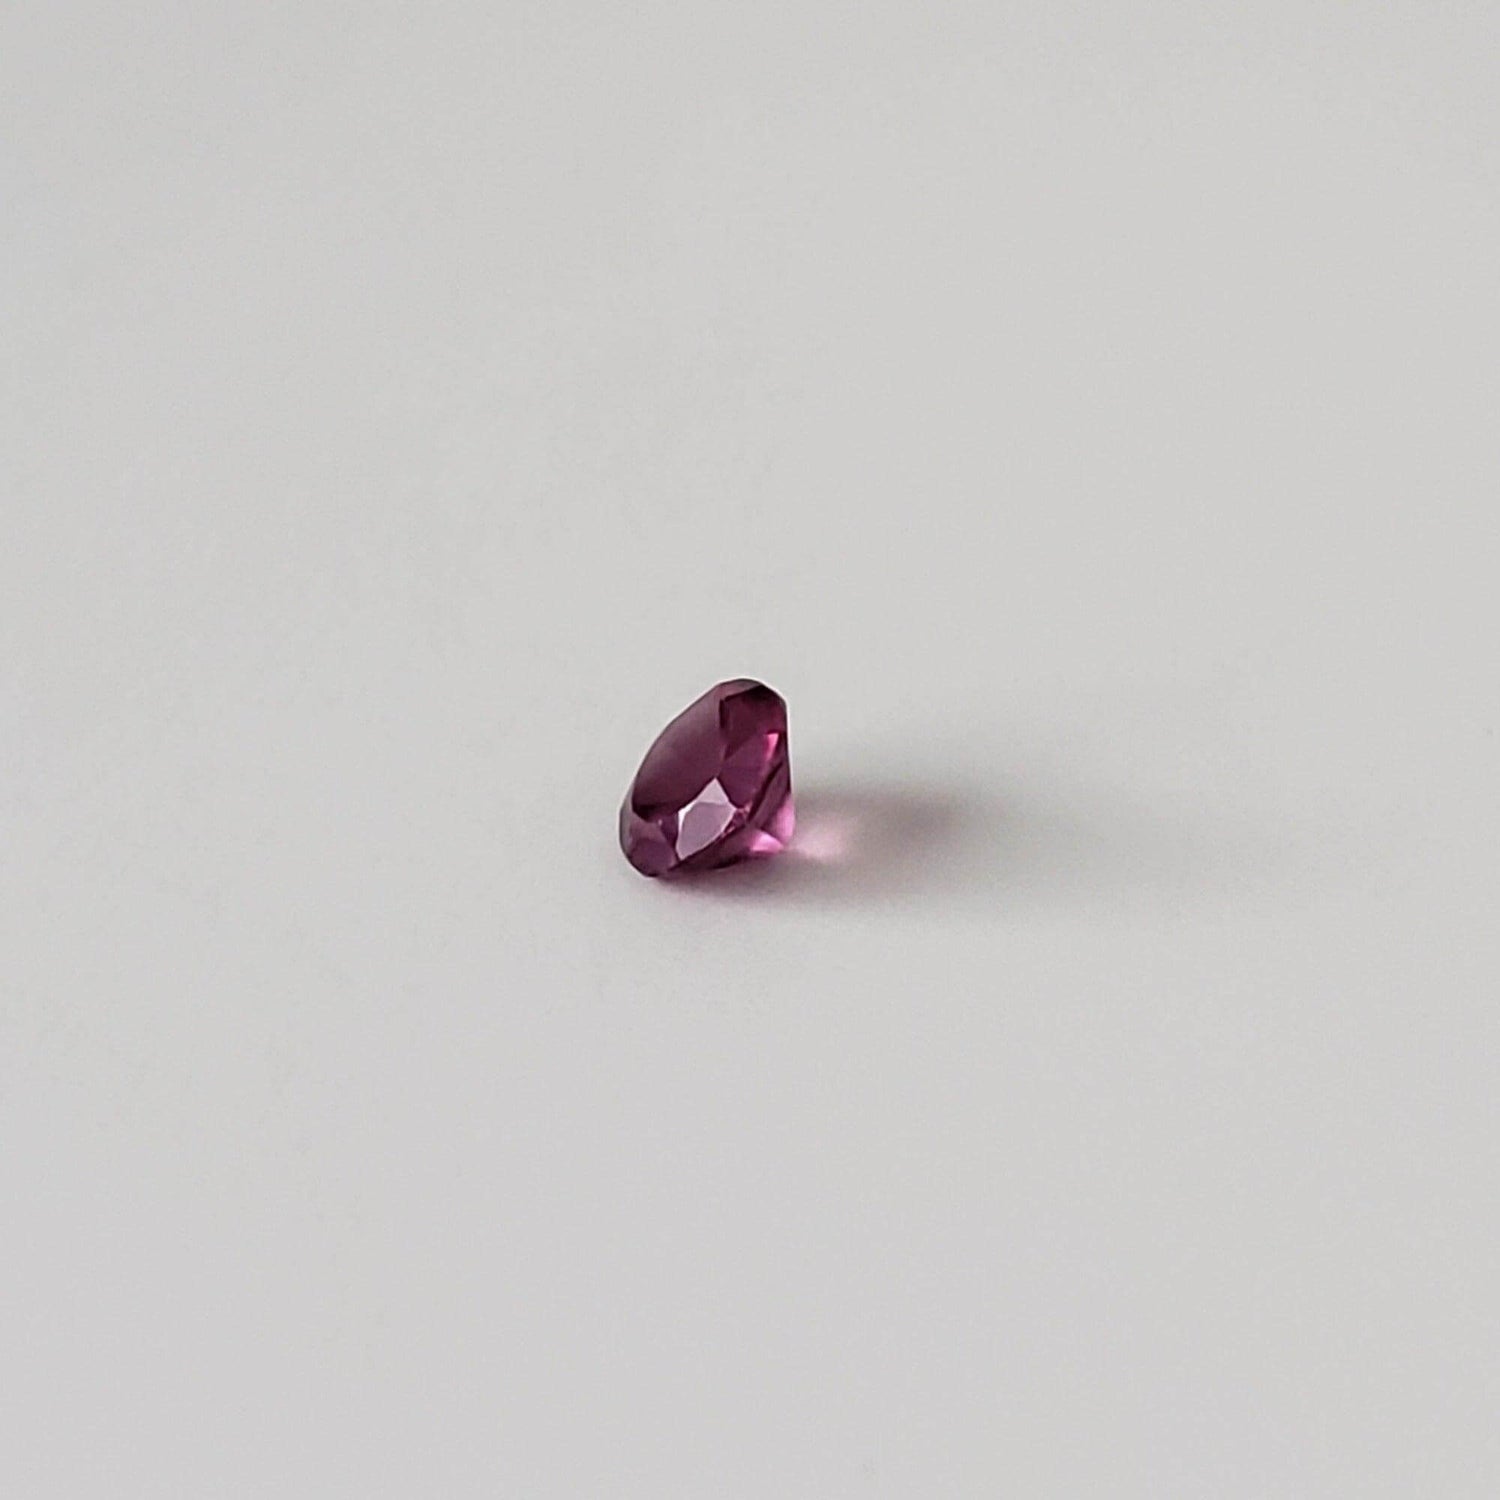 Rhodolite Garnet | Untreated Garnet | Round Cut | Reddish Purple | 3.4mm .22ct